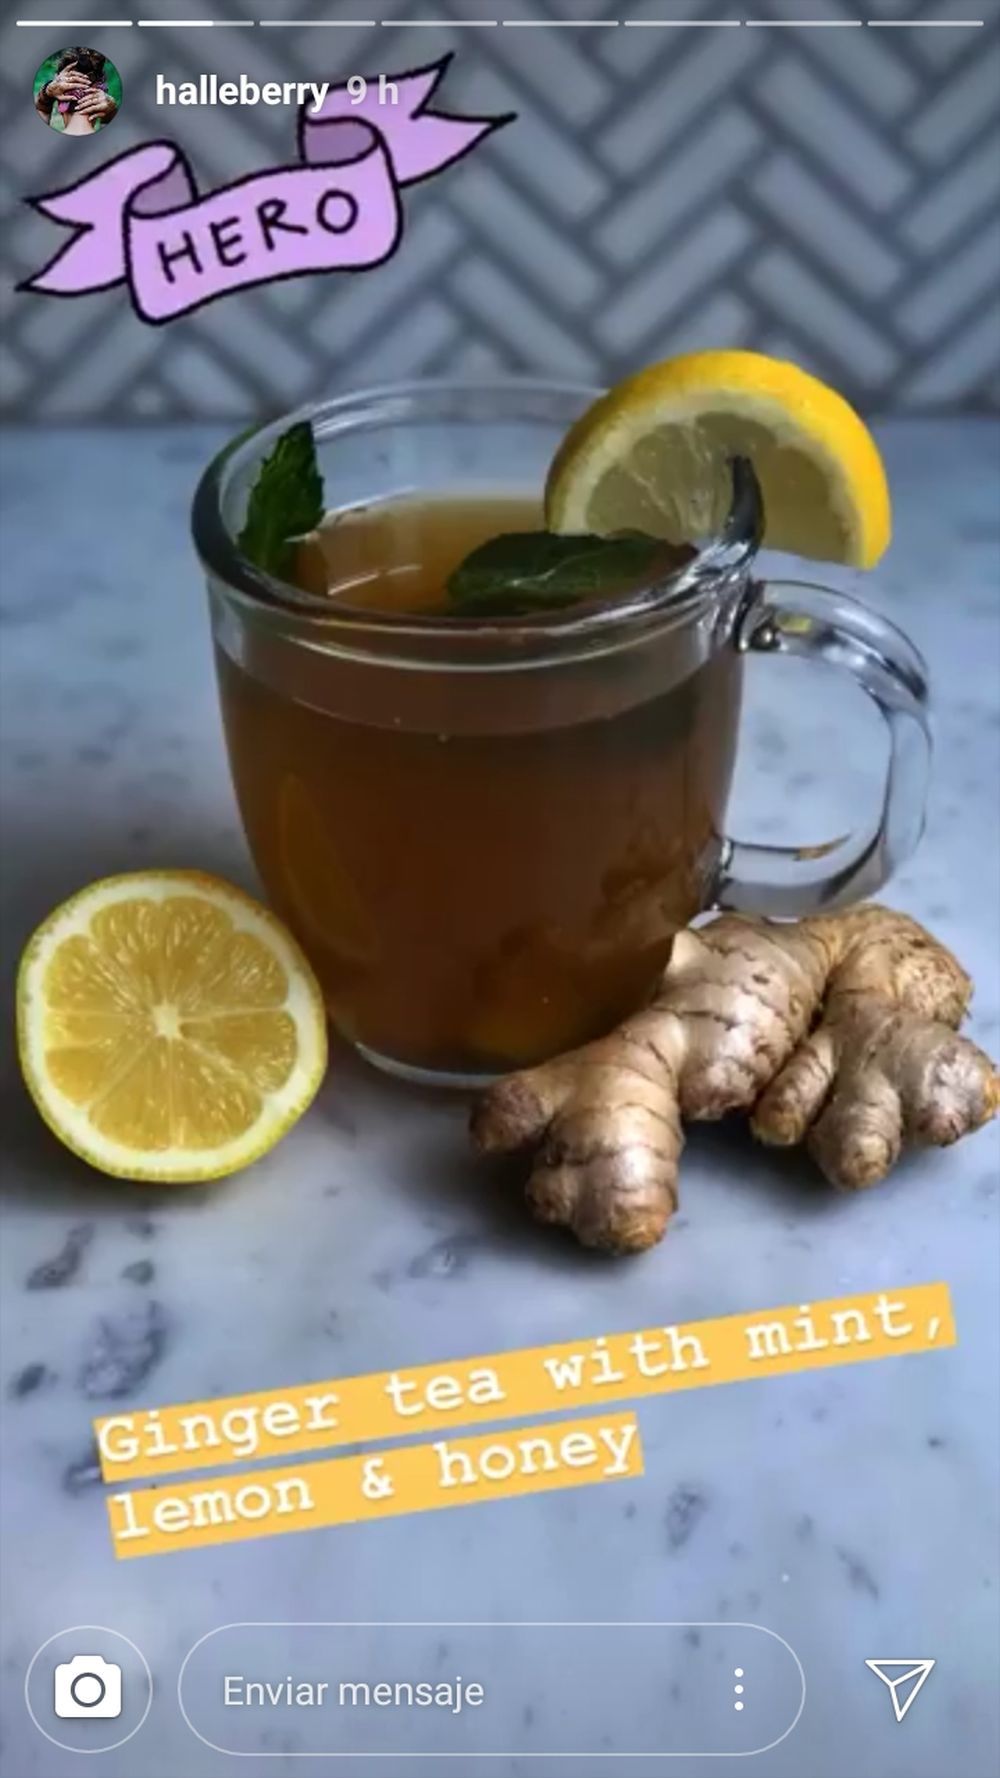 La infusión detox de Halle Berry, té de jengibre con limón y menta.